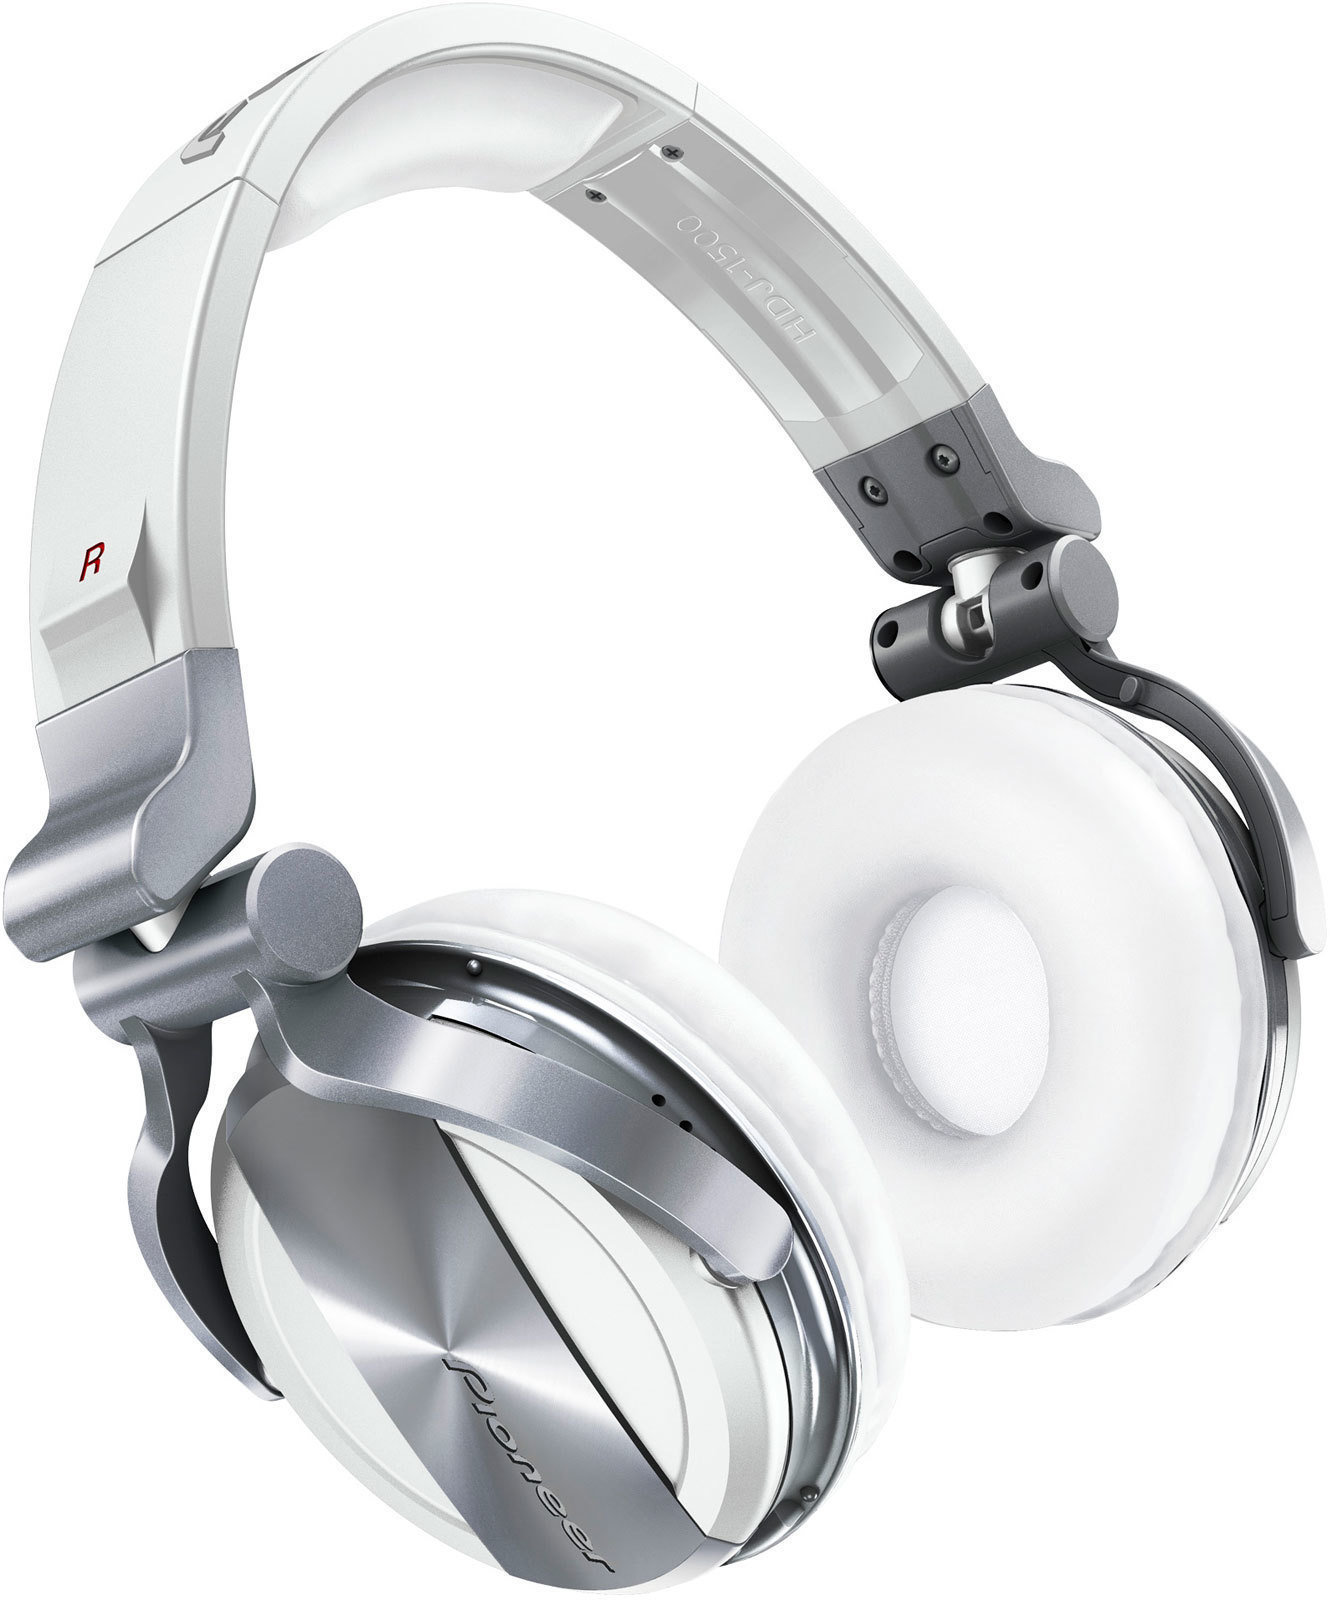 Słuchawki DJ Pioneer Dj HDJ-1500 White